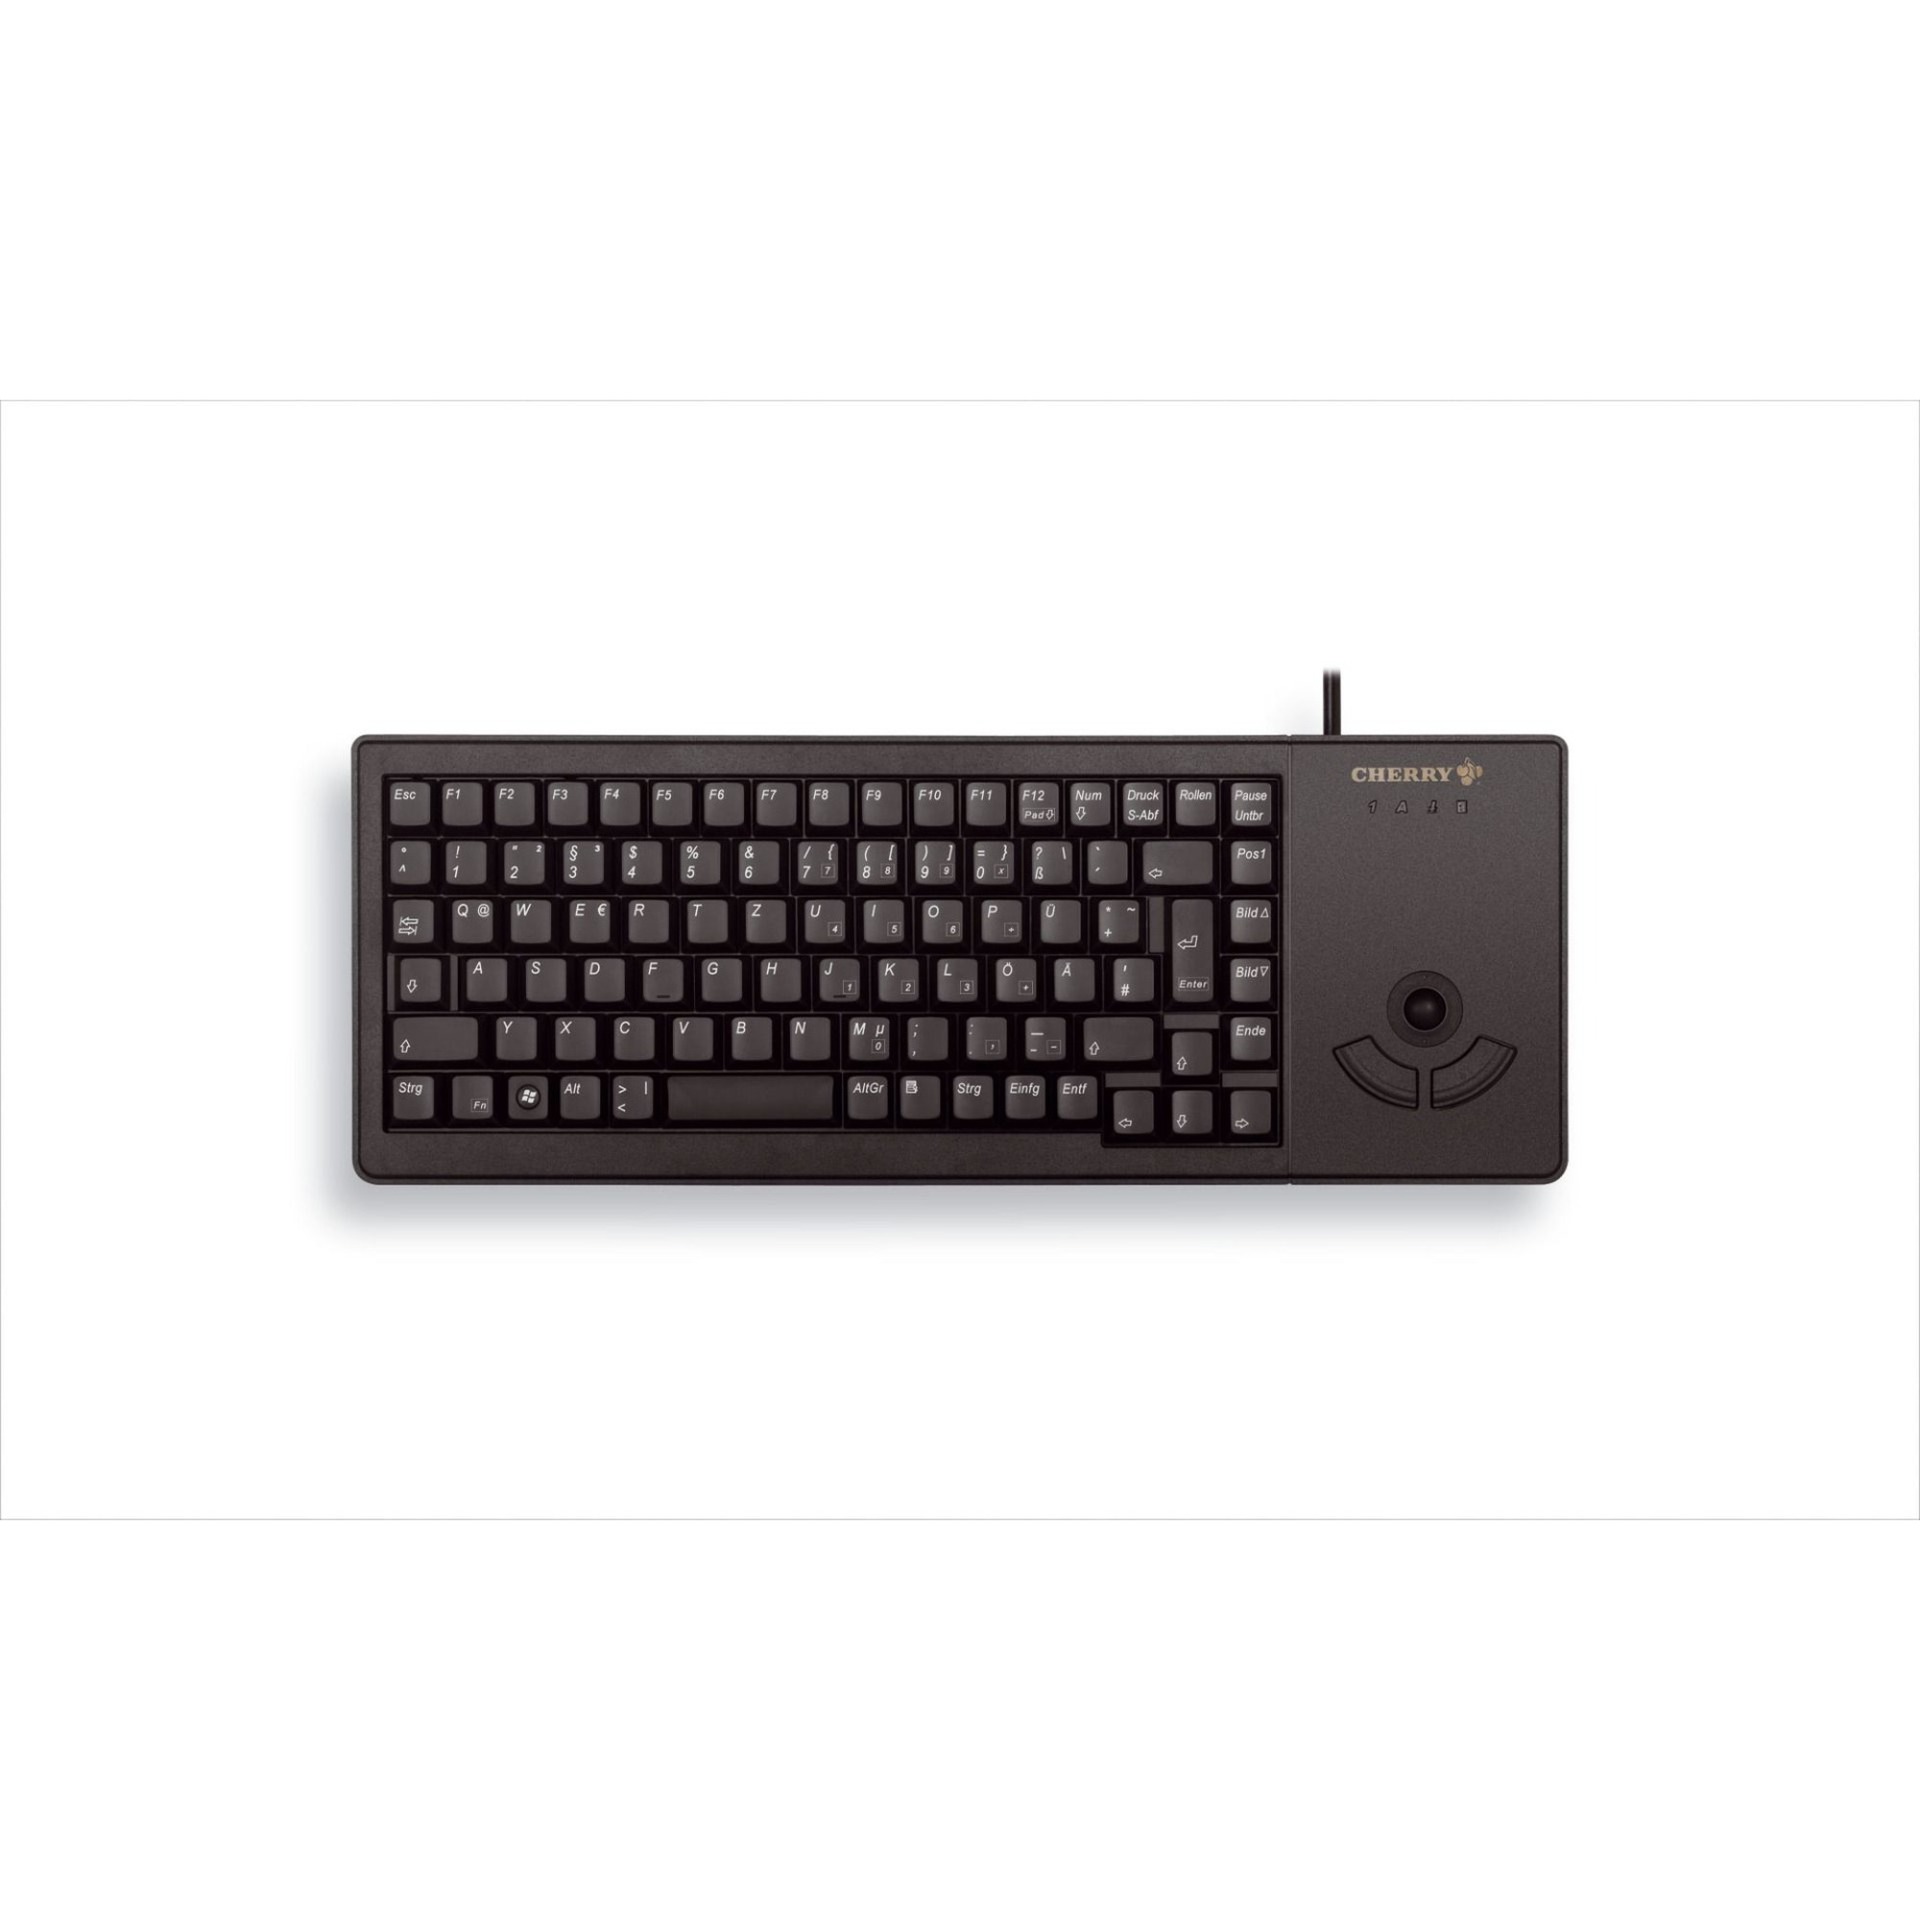 Image of Alternate - XS Trackball Keyboard G84-5400, Tastatur online einkaufen bei Alternate